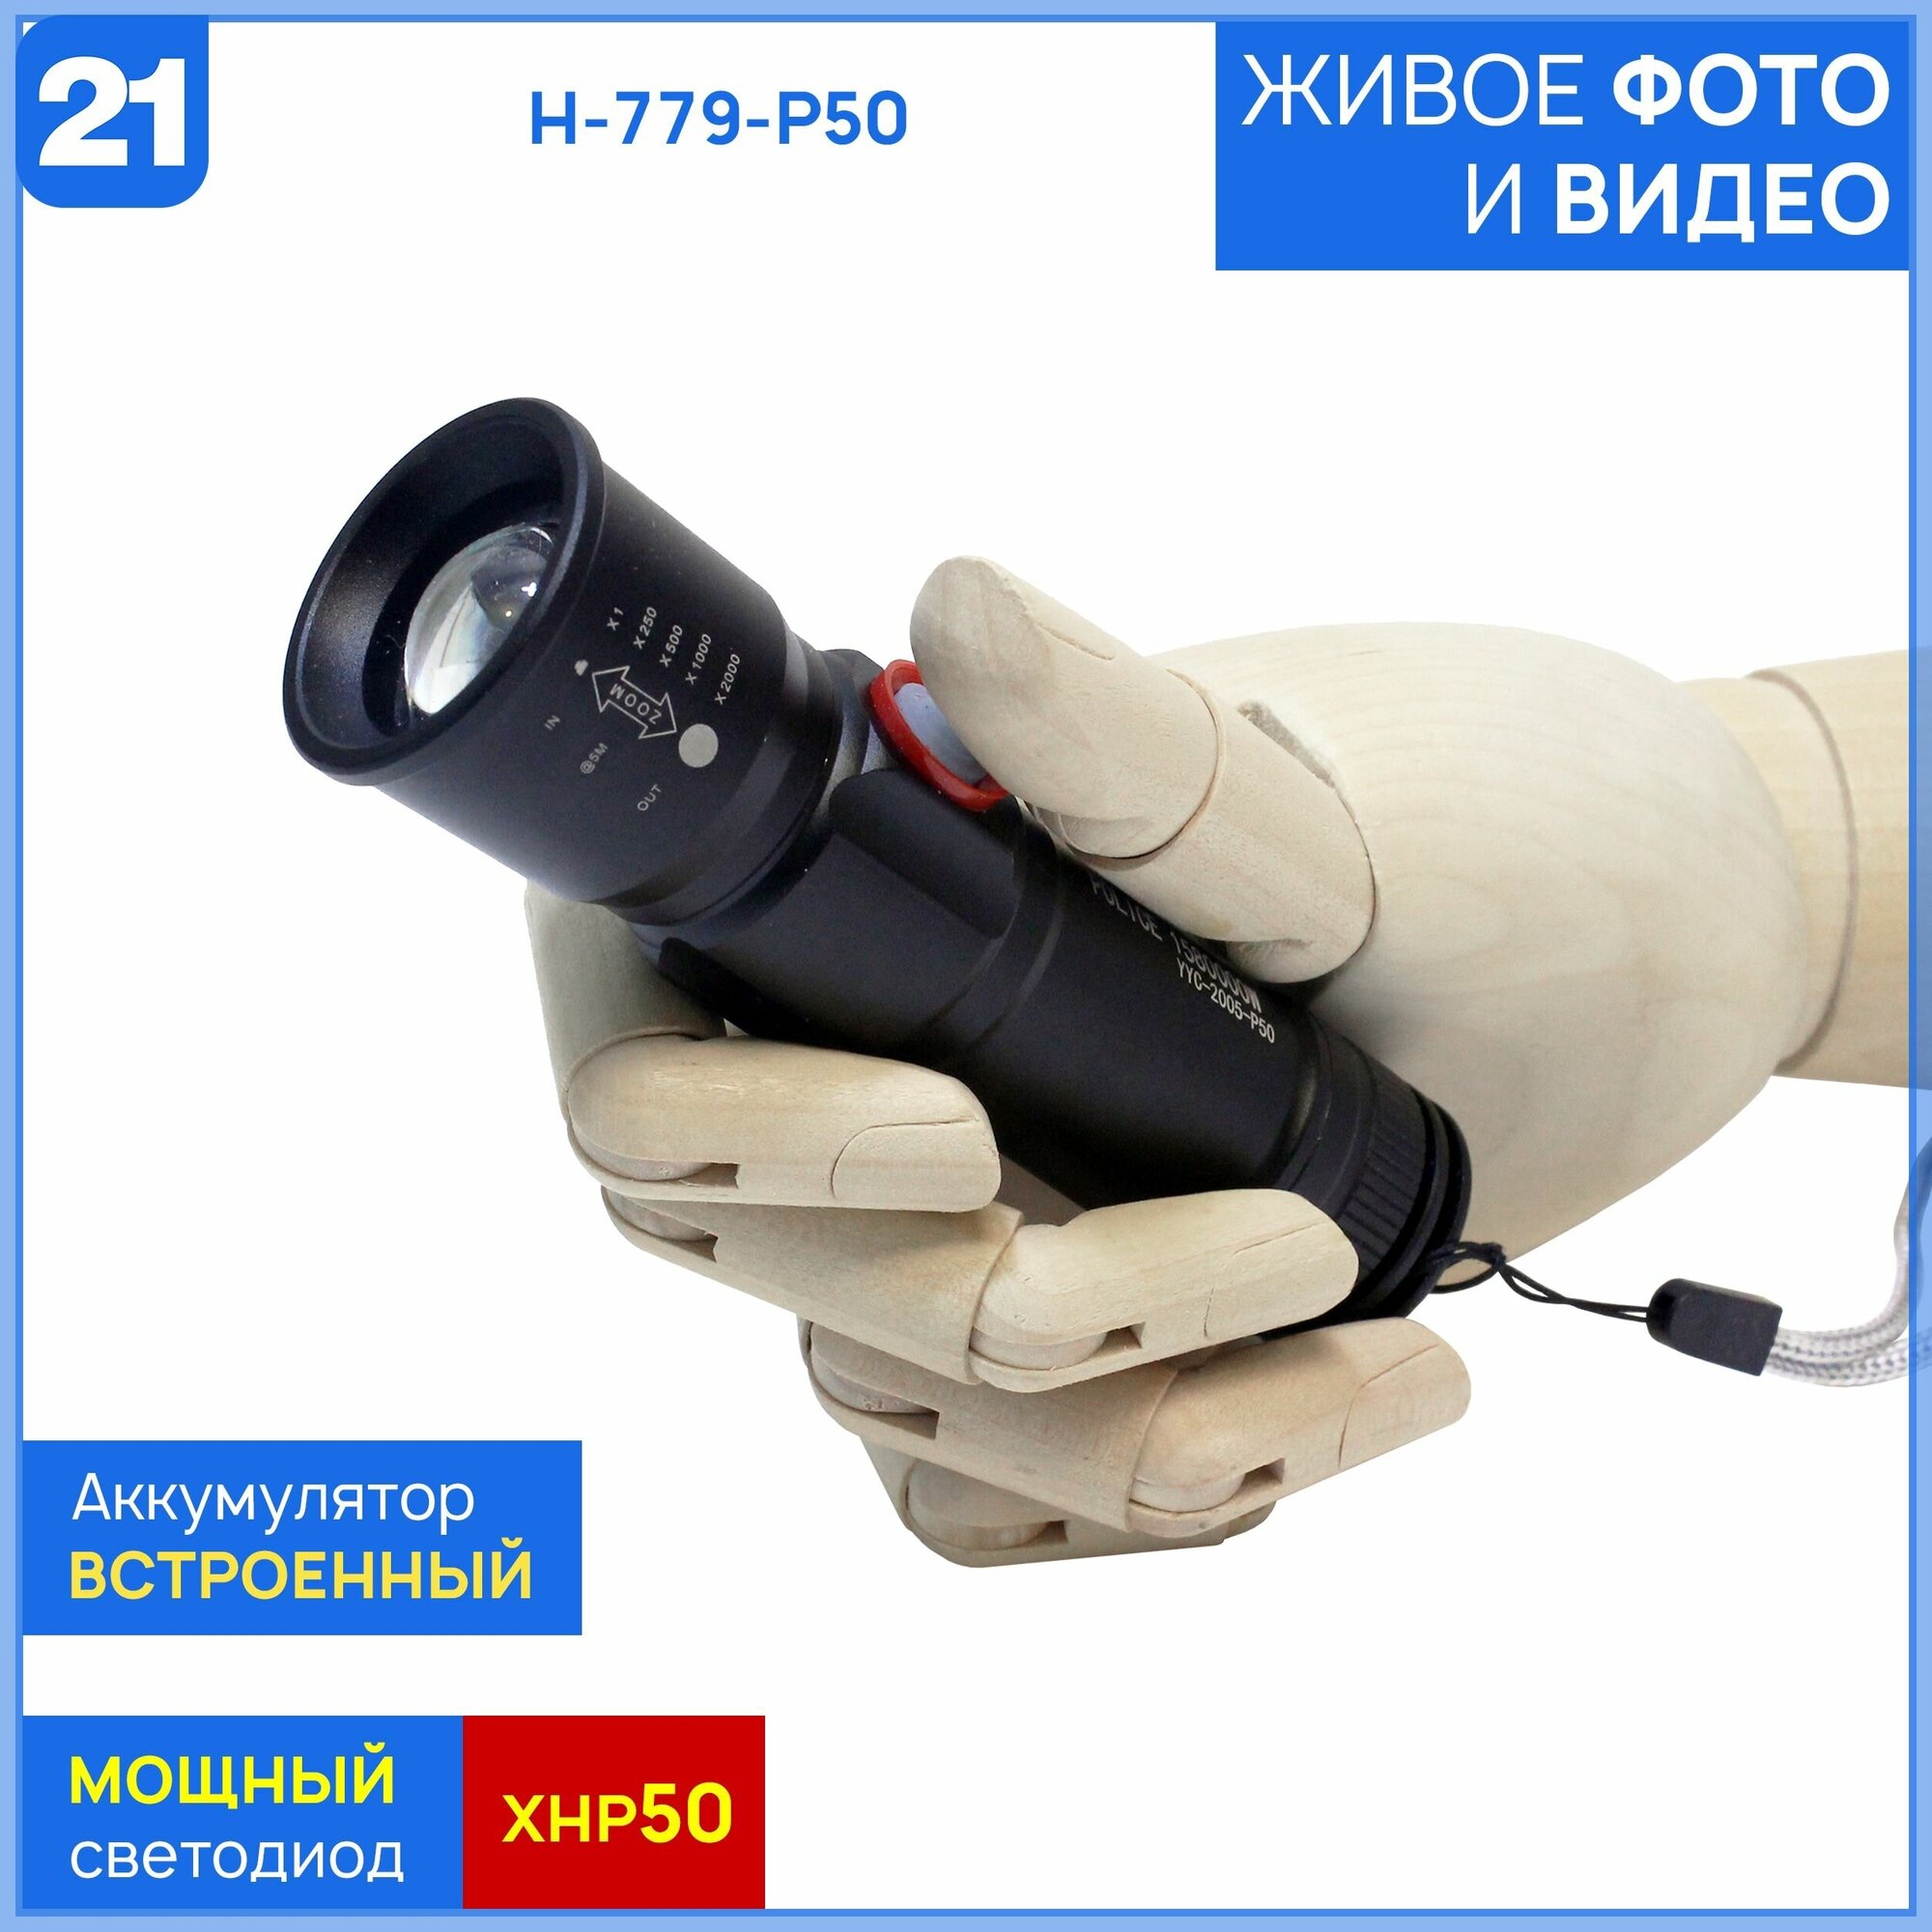 Ручной из серии "Compact" со встроенным аккумулятором Огонь H-779-P50 (YYC-2005-P50) — купить в интернет-магазине по низкой цене на Яндекс Маркете